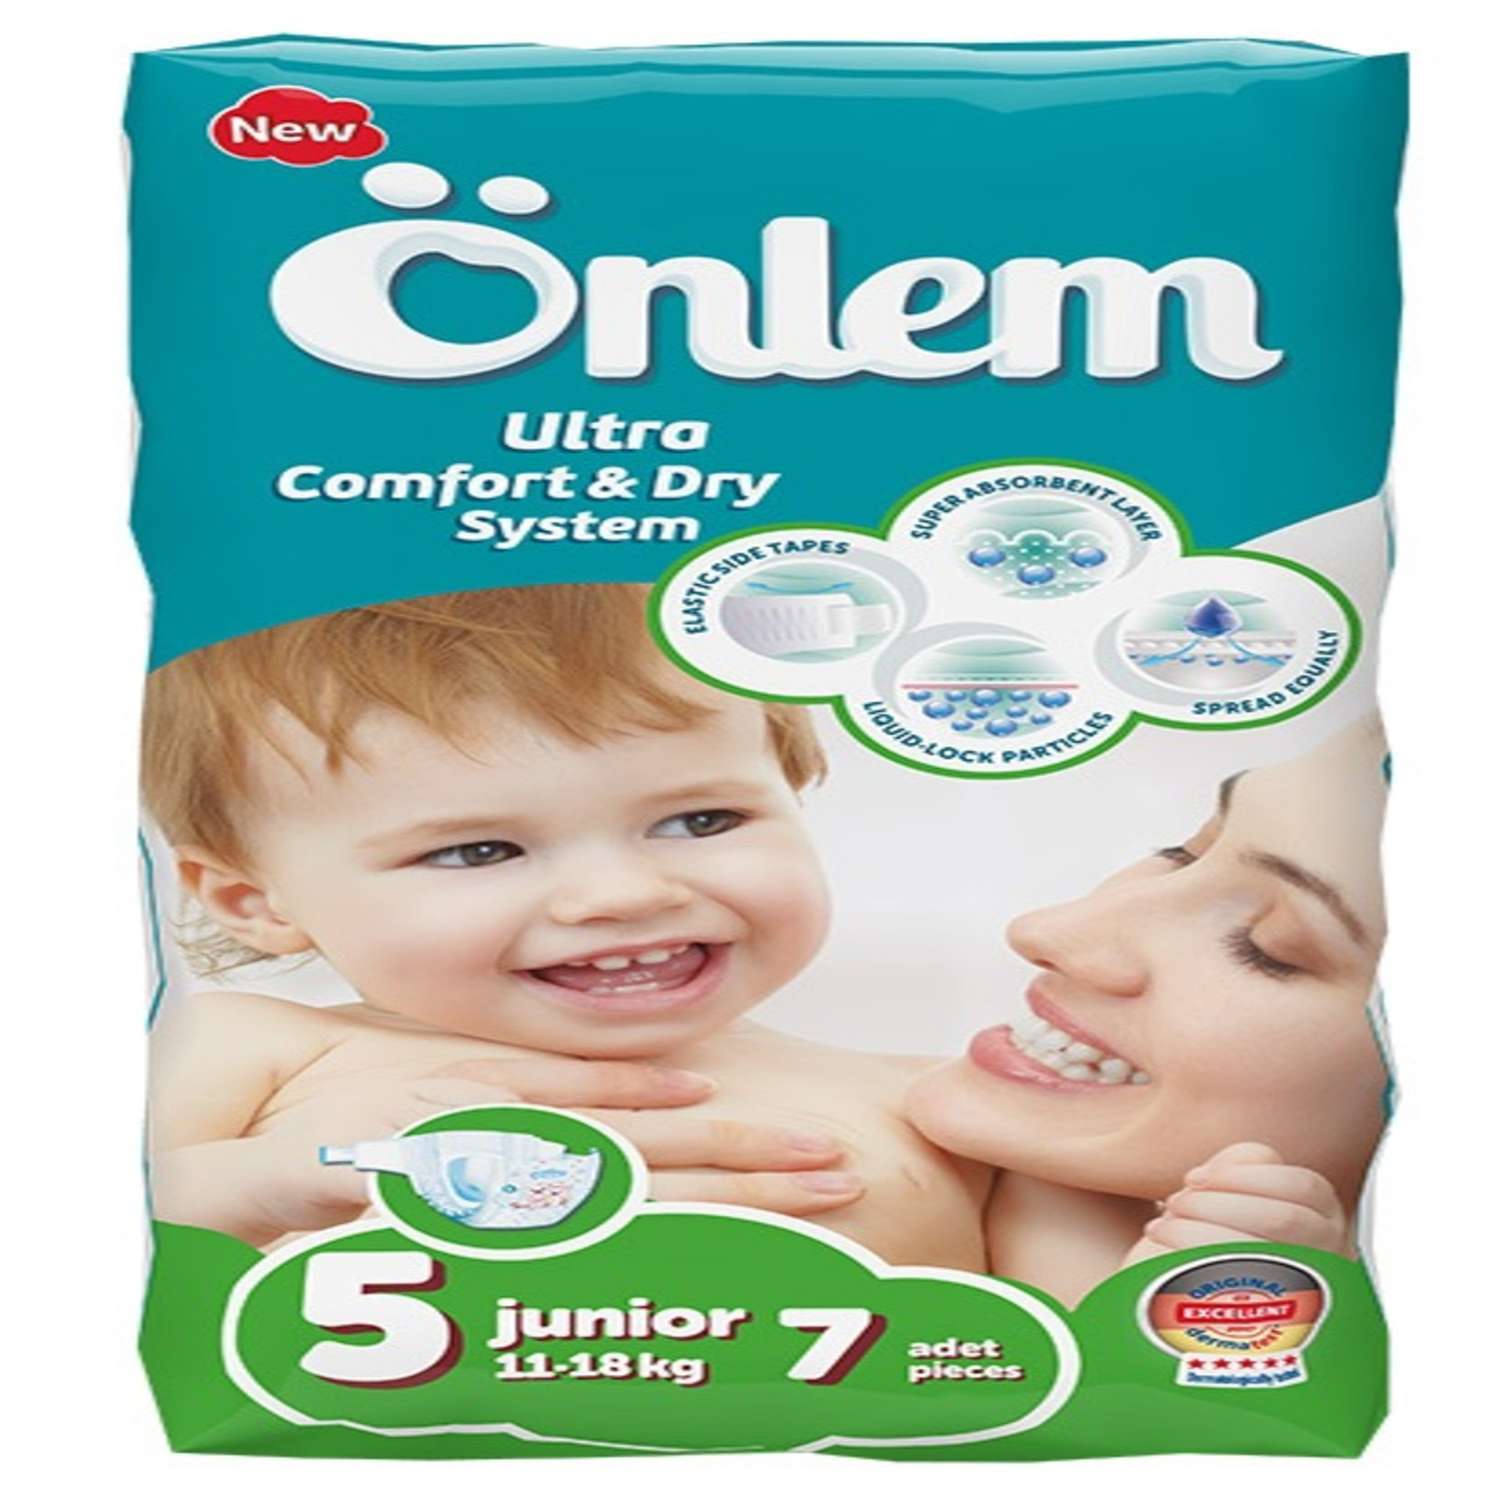 Подгузники Onlem Ultra Comfort Dry System для детей 5 11-18 кг 7 шт - фото 1